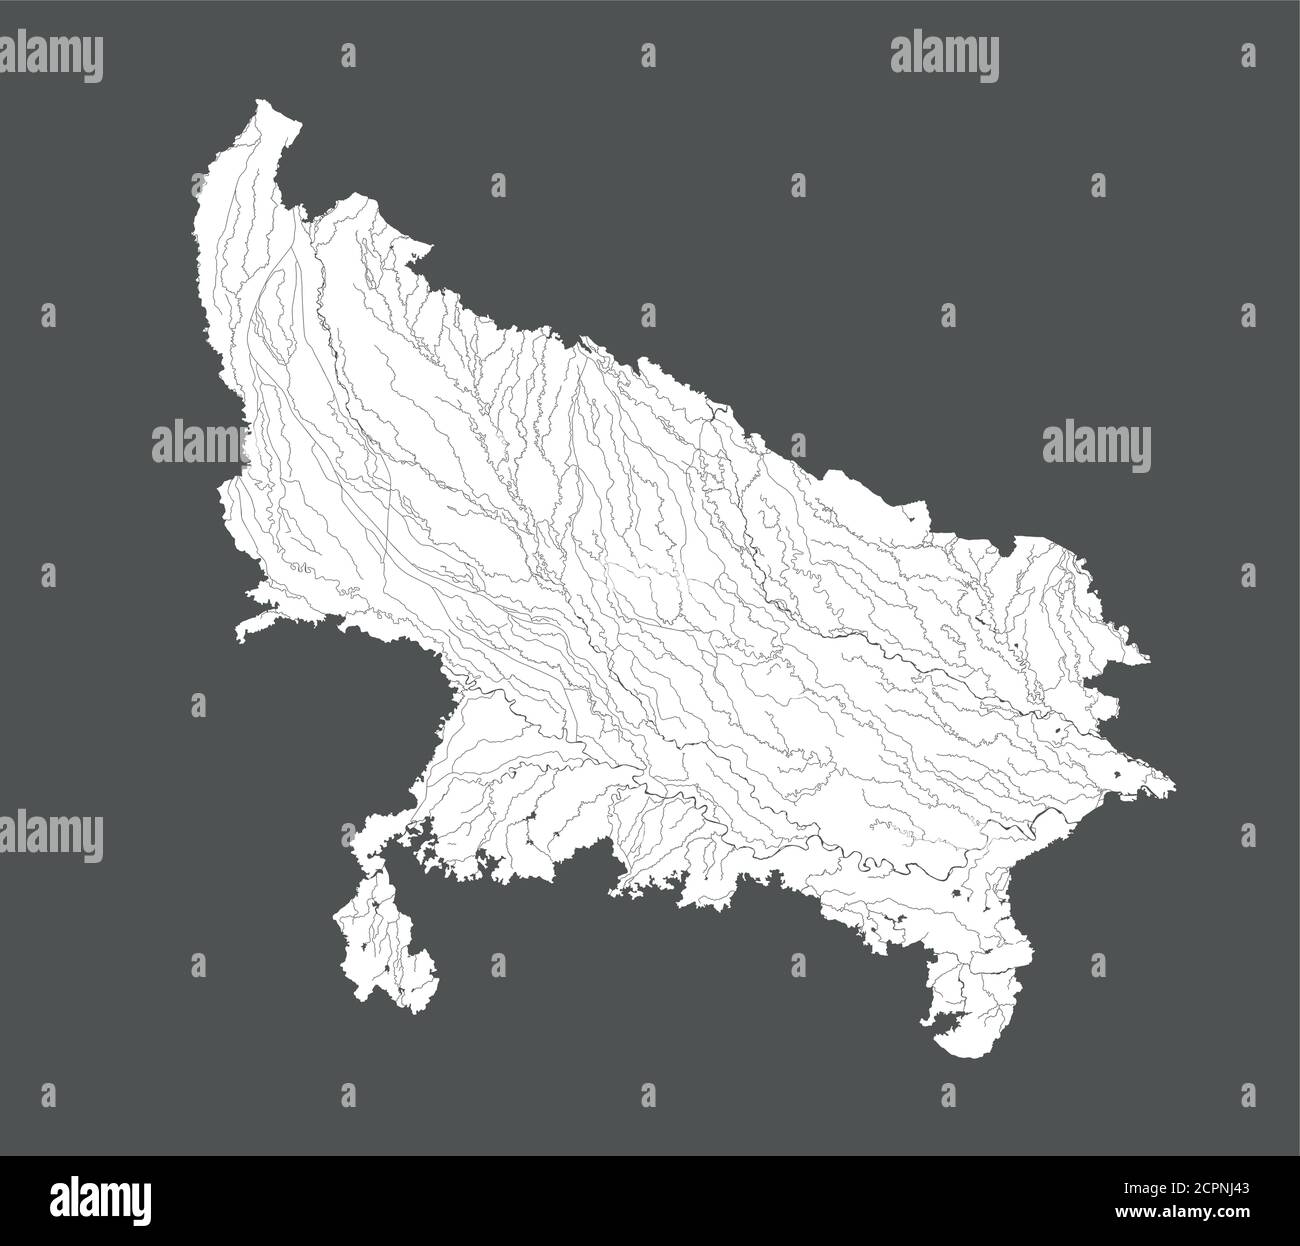 Indien Staaten - Karte von Uttar Pradesh. Handgemacht. Flüsse und Seen werden angezeigt. Bitte sehen Sie sich meine anderen Bilder von kartographischen Serien an - sie sind alle sehr Stock Vektor